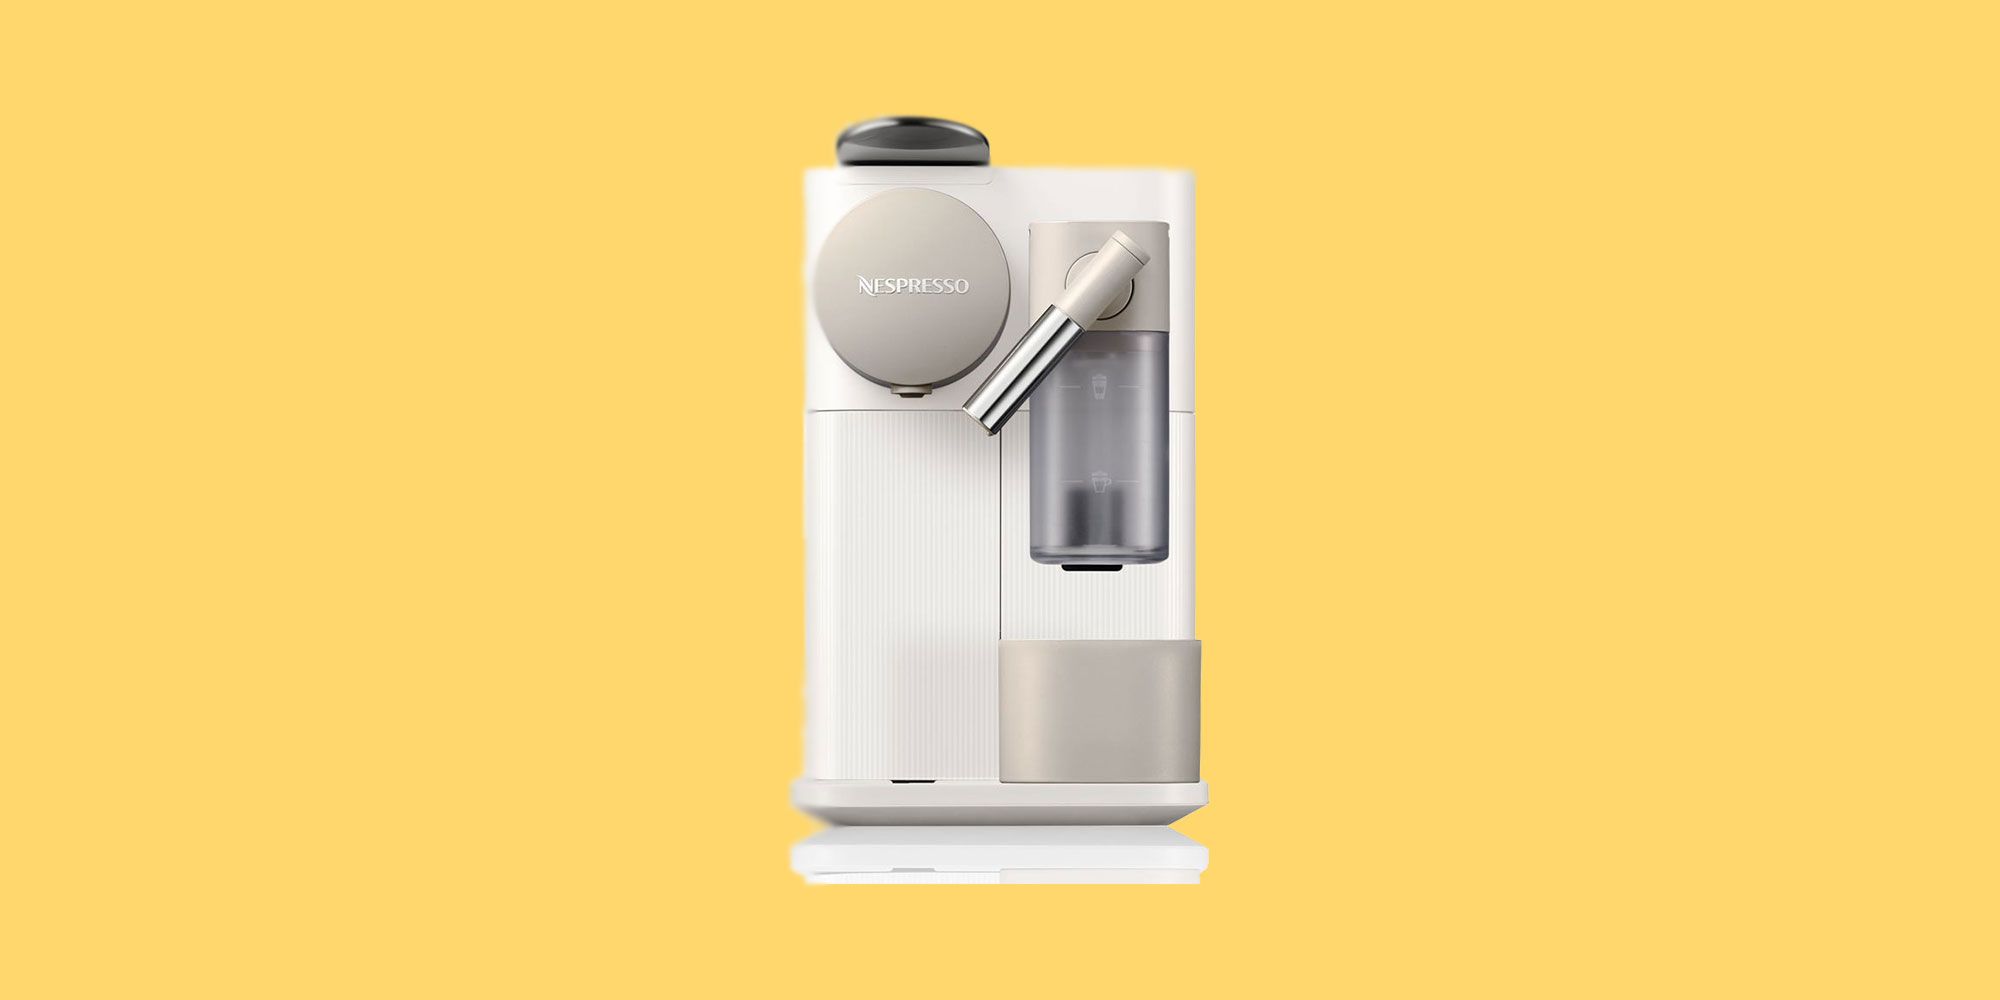 Delonghi Nespresso Lattissima One Pod Machine Review